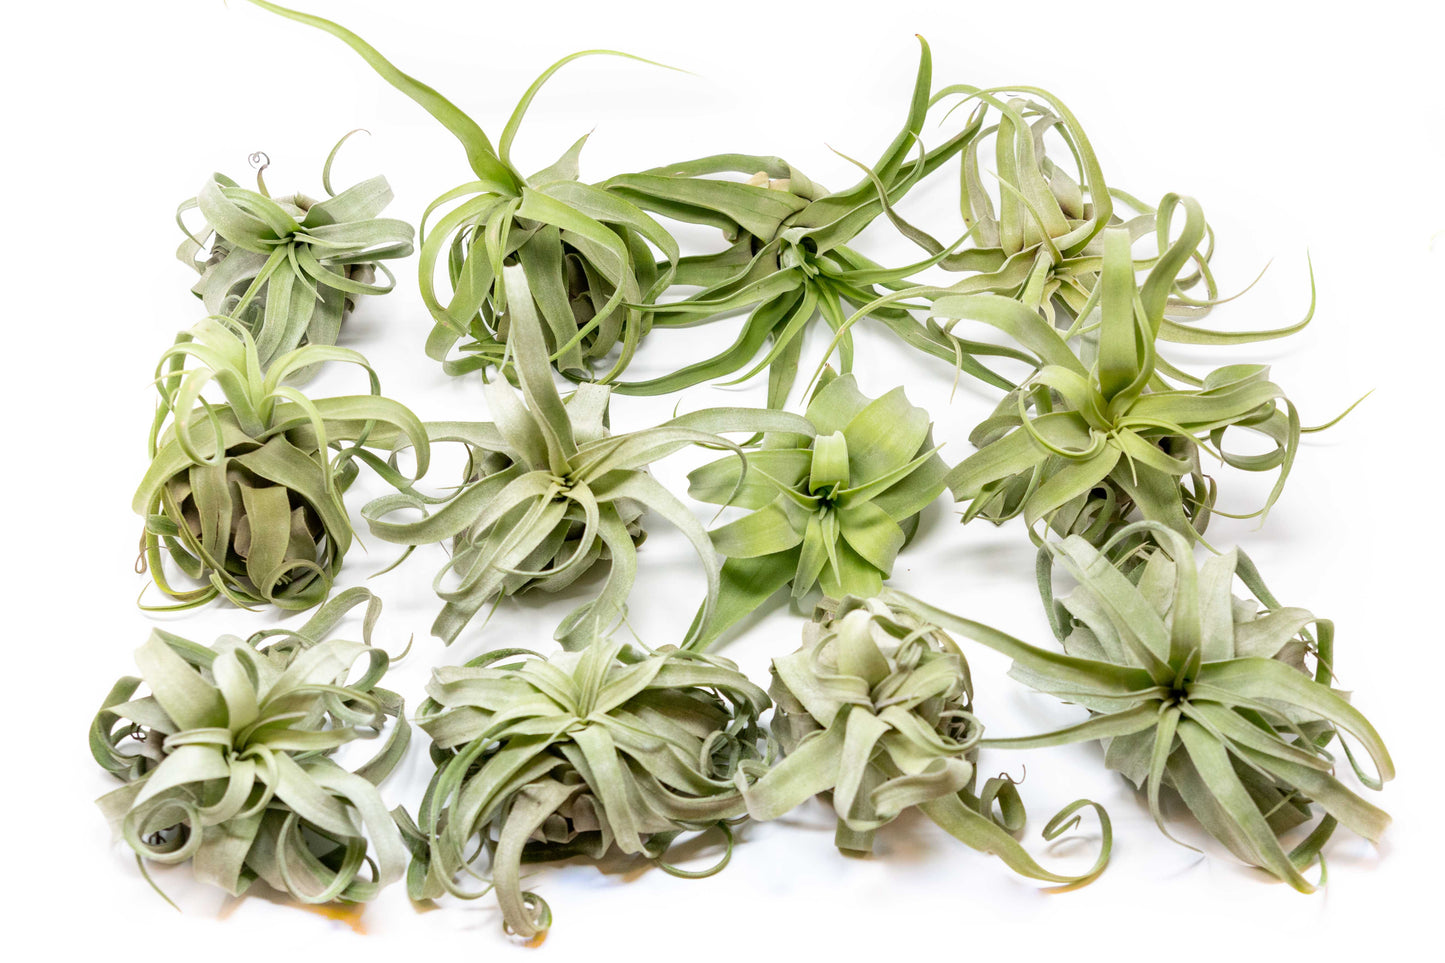 SALE - Tillandsia Streptophylla Air Plants - Set of 3 or 6 - 30% Off